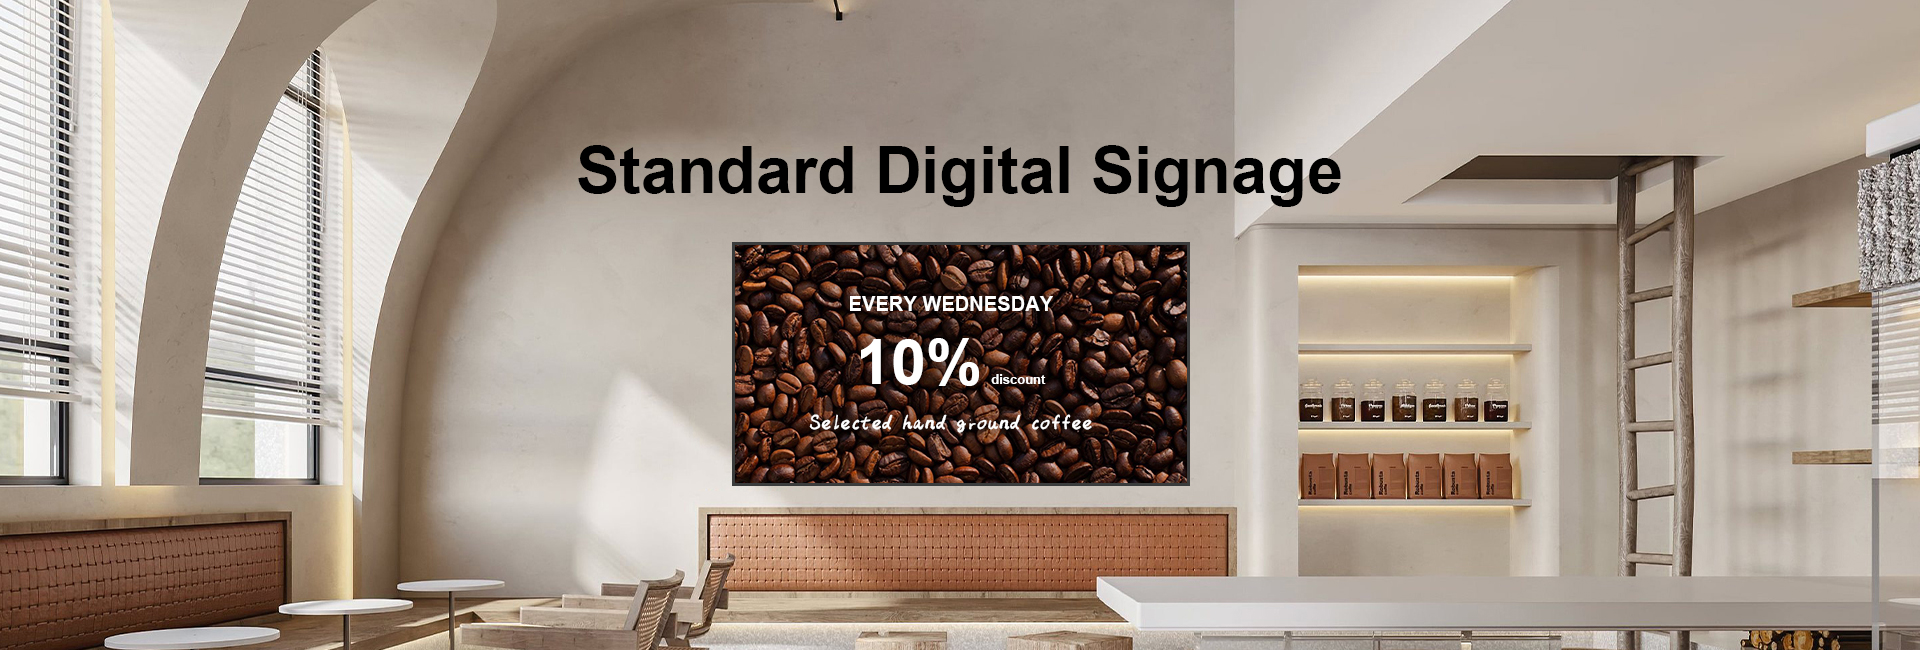 Standard Digital Signage